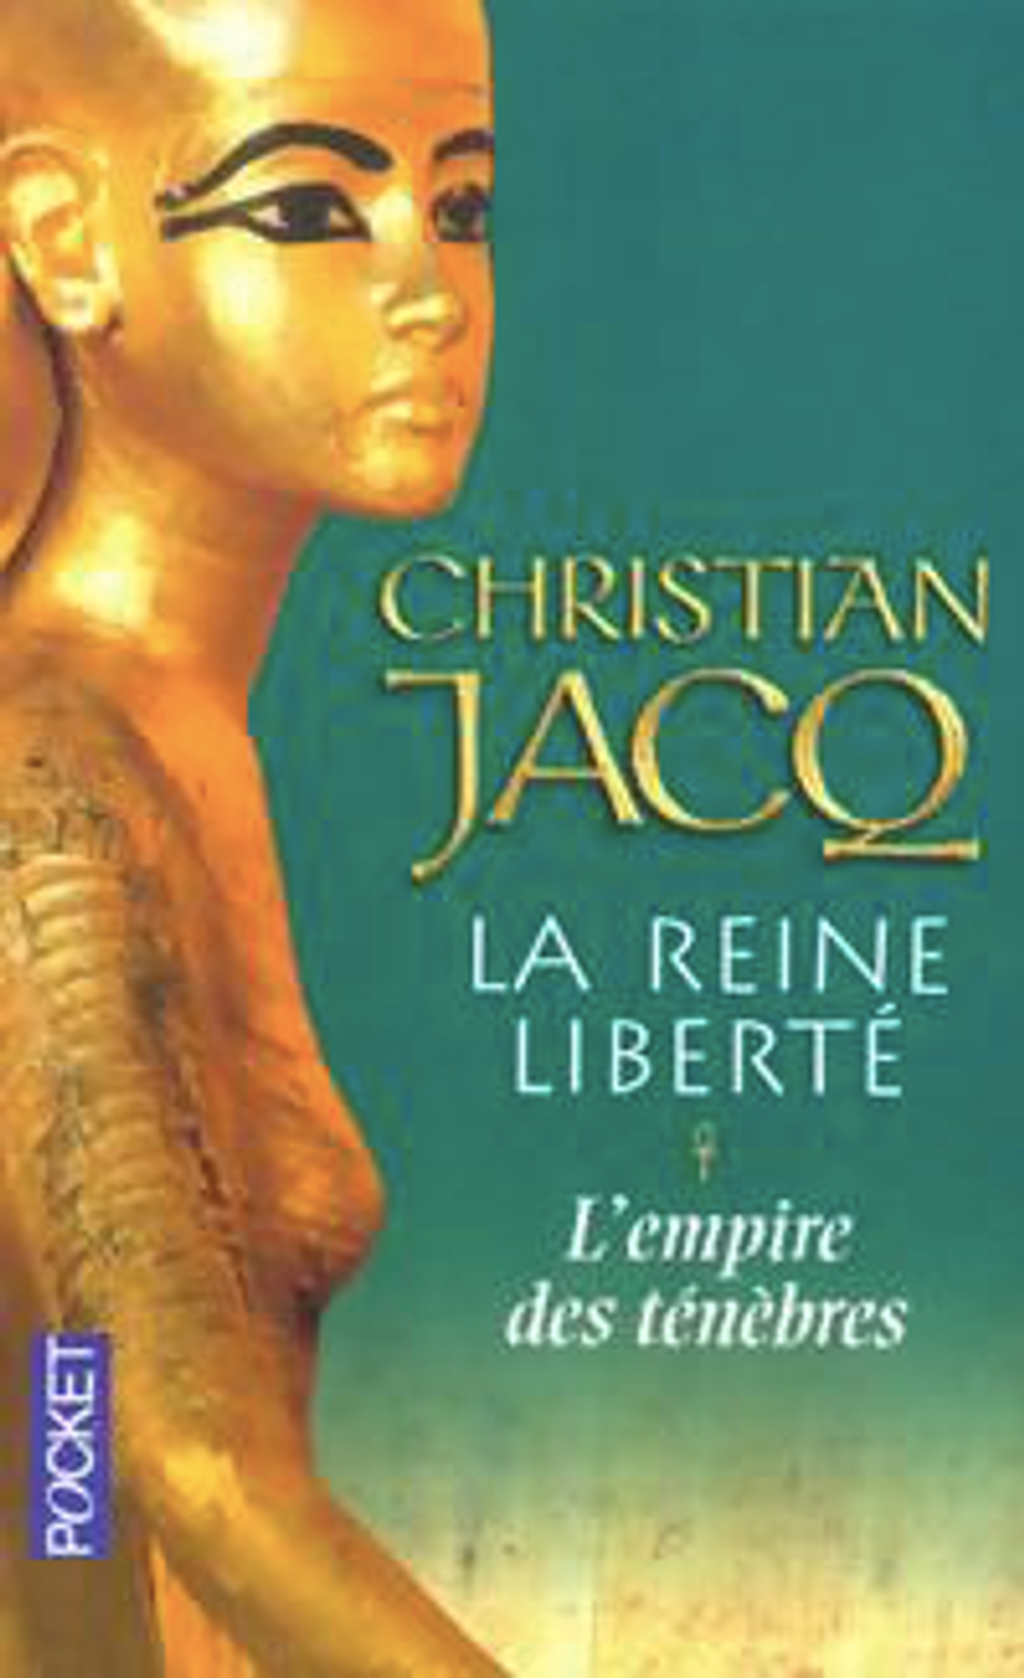 La reine liberté - Tome 1 - L'empire des ténèbres - Christian Jacq - A3 - M - 17 -9782266126915.png